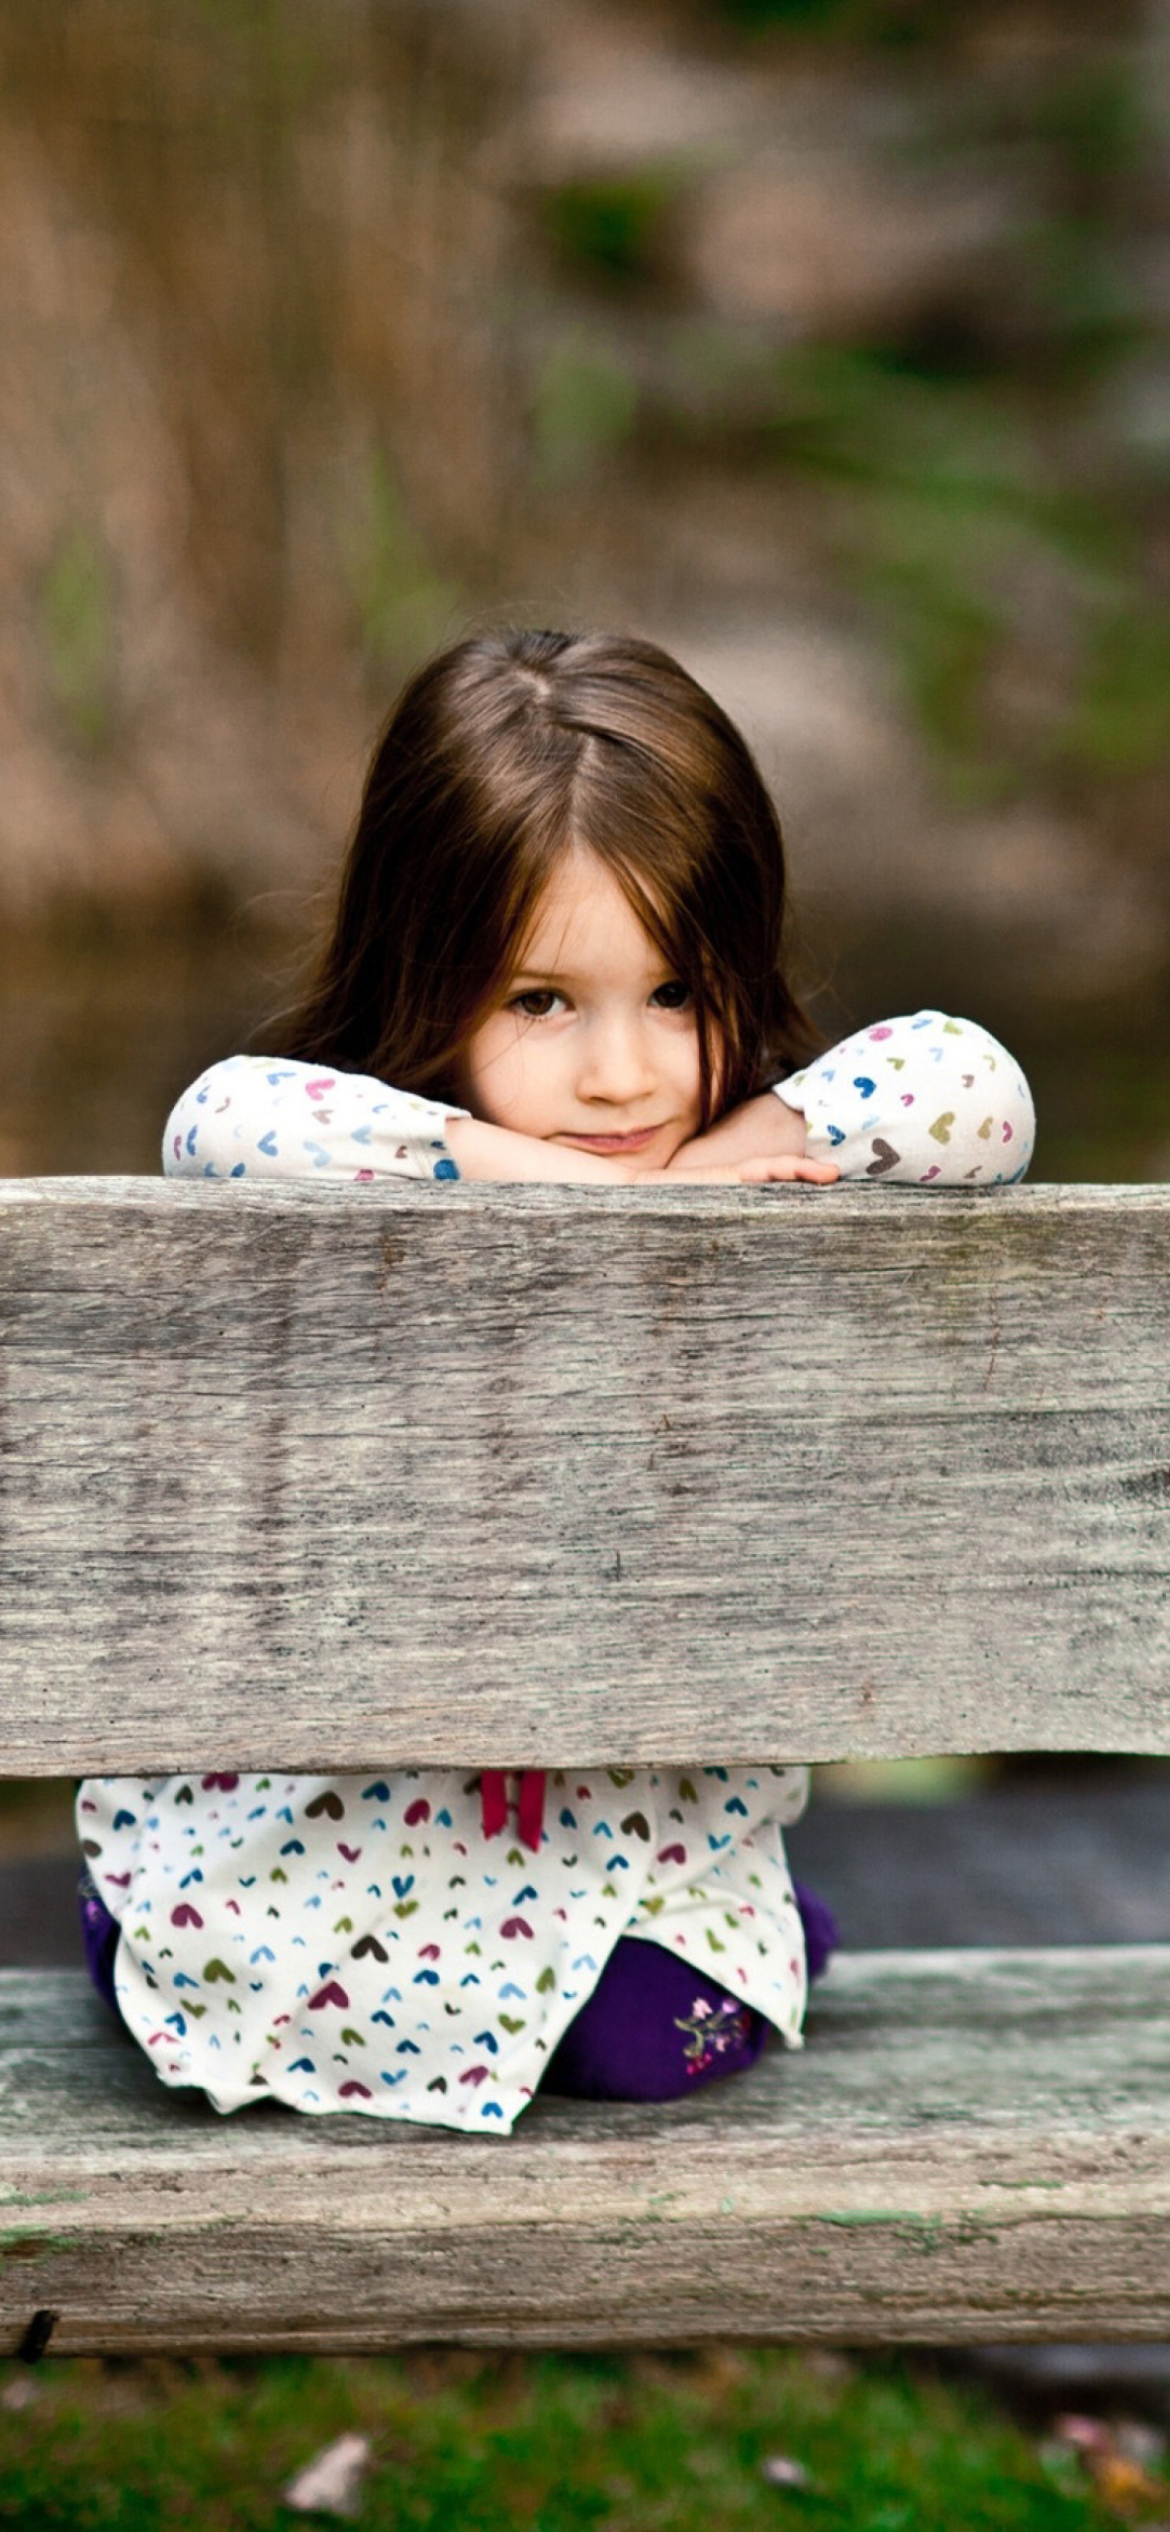 Das Child Sitting On Bench Wallpaper 1170x2532